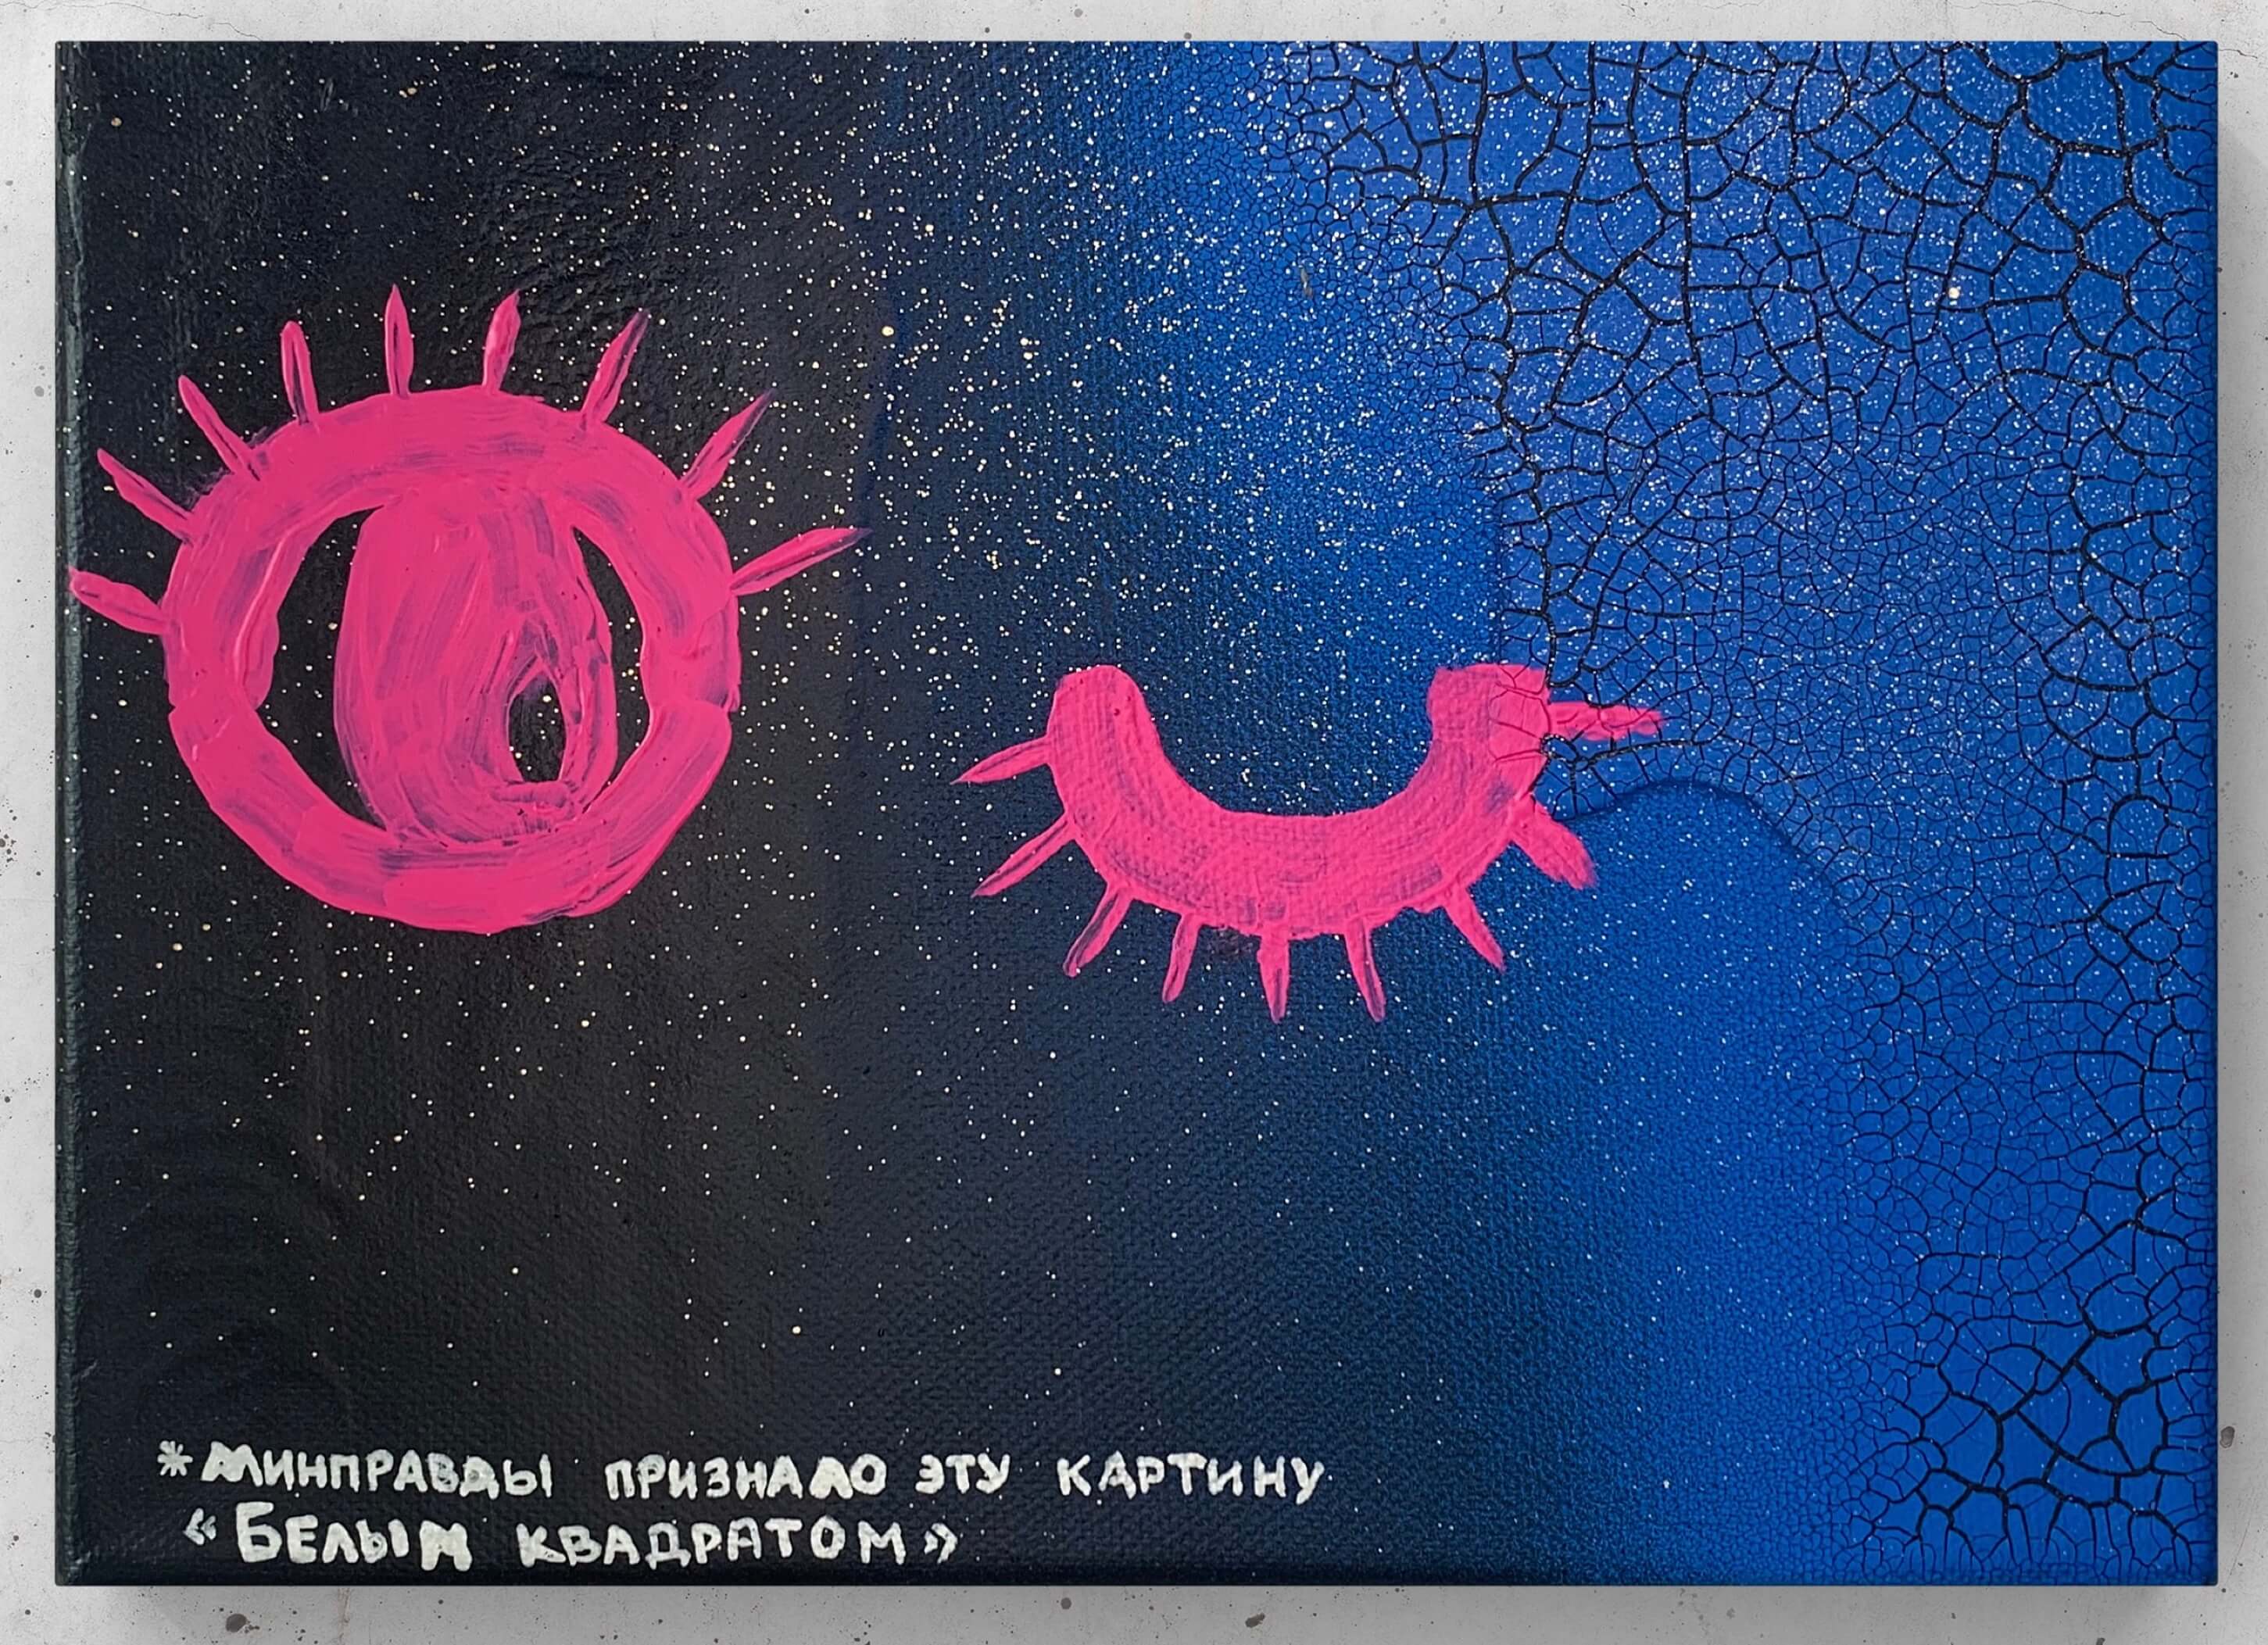 Картина современного российского художника Colonel Royce (Василий Круглов) в стиле концептуализм, поп-арт, минимализм. Цвета: синий, чёрный, золотой, розовый, серебряный. Сюжет: интернет, блокировки, цензура, политика